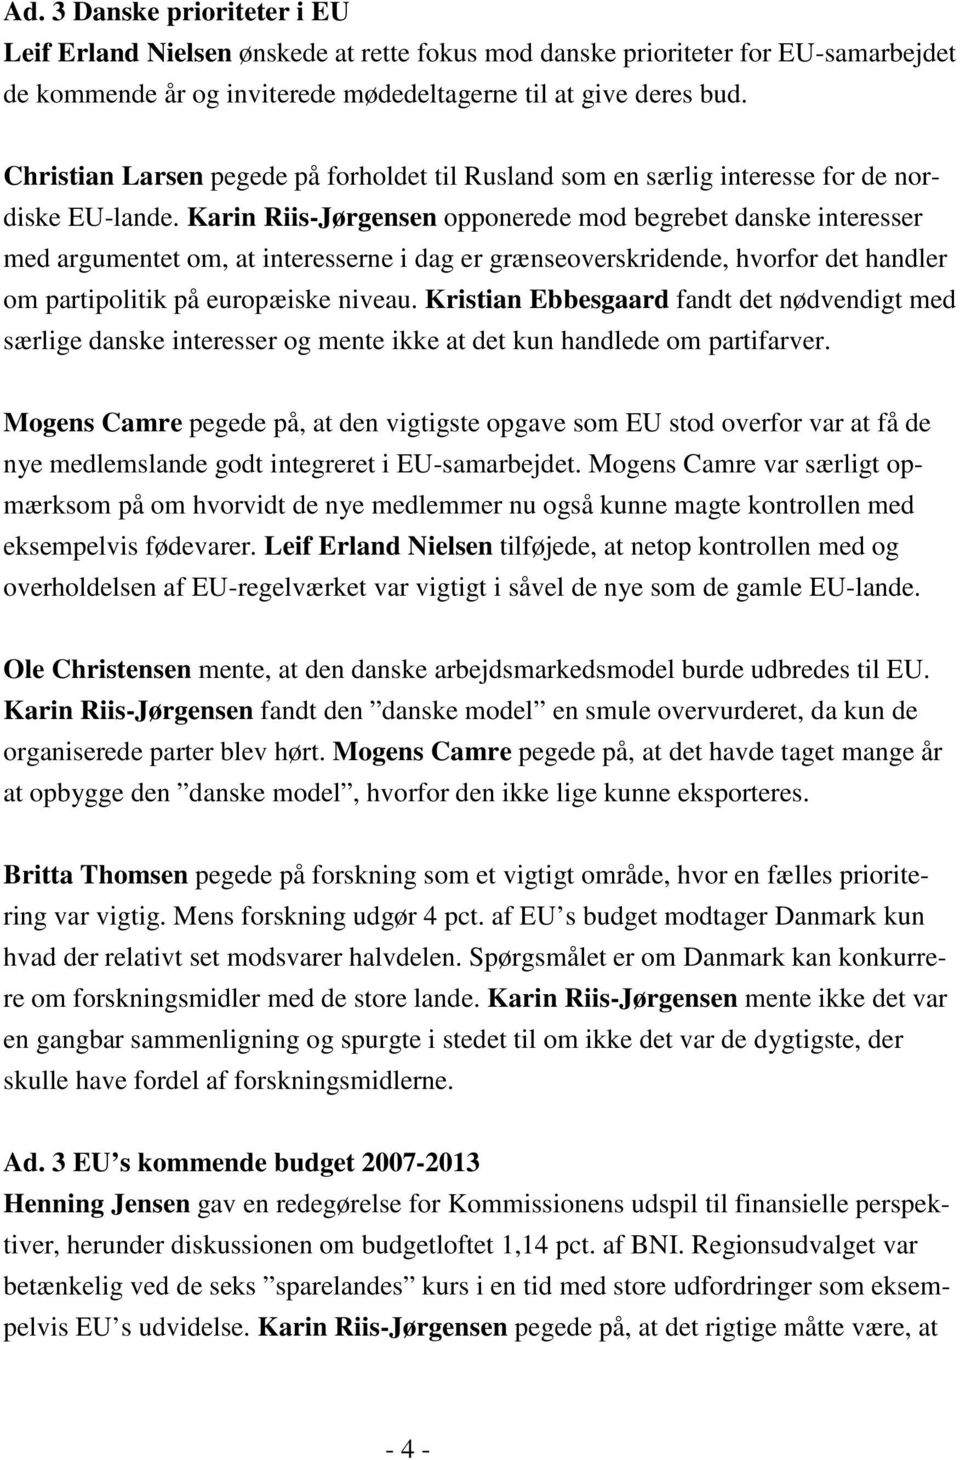 Karin Riis-Jørgensen opponerede mod begrebet danske interesser med argumentet om, at interesserne i dag er grænseoverskridende, hvorfor det handler om partipolitik på europæiske niveau.